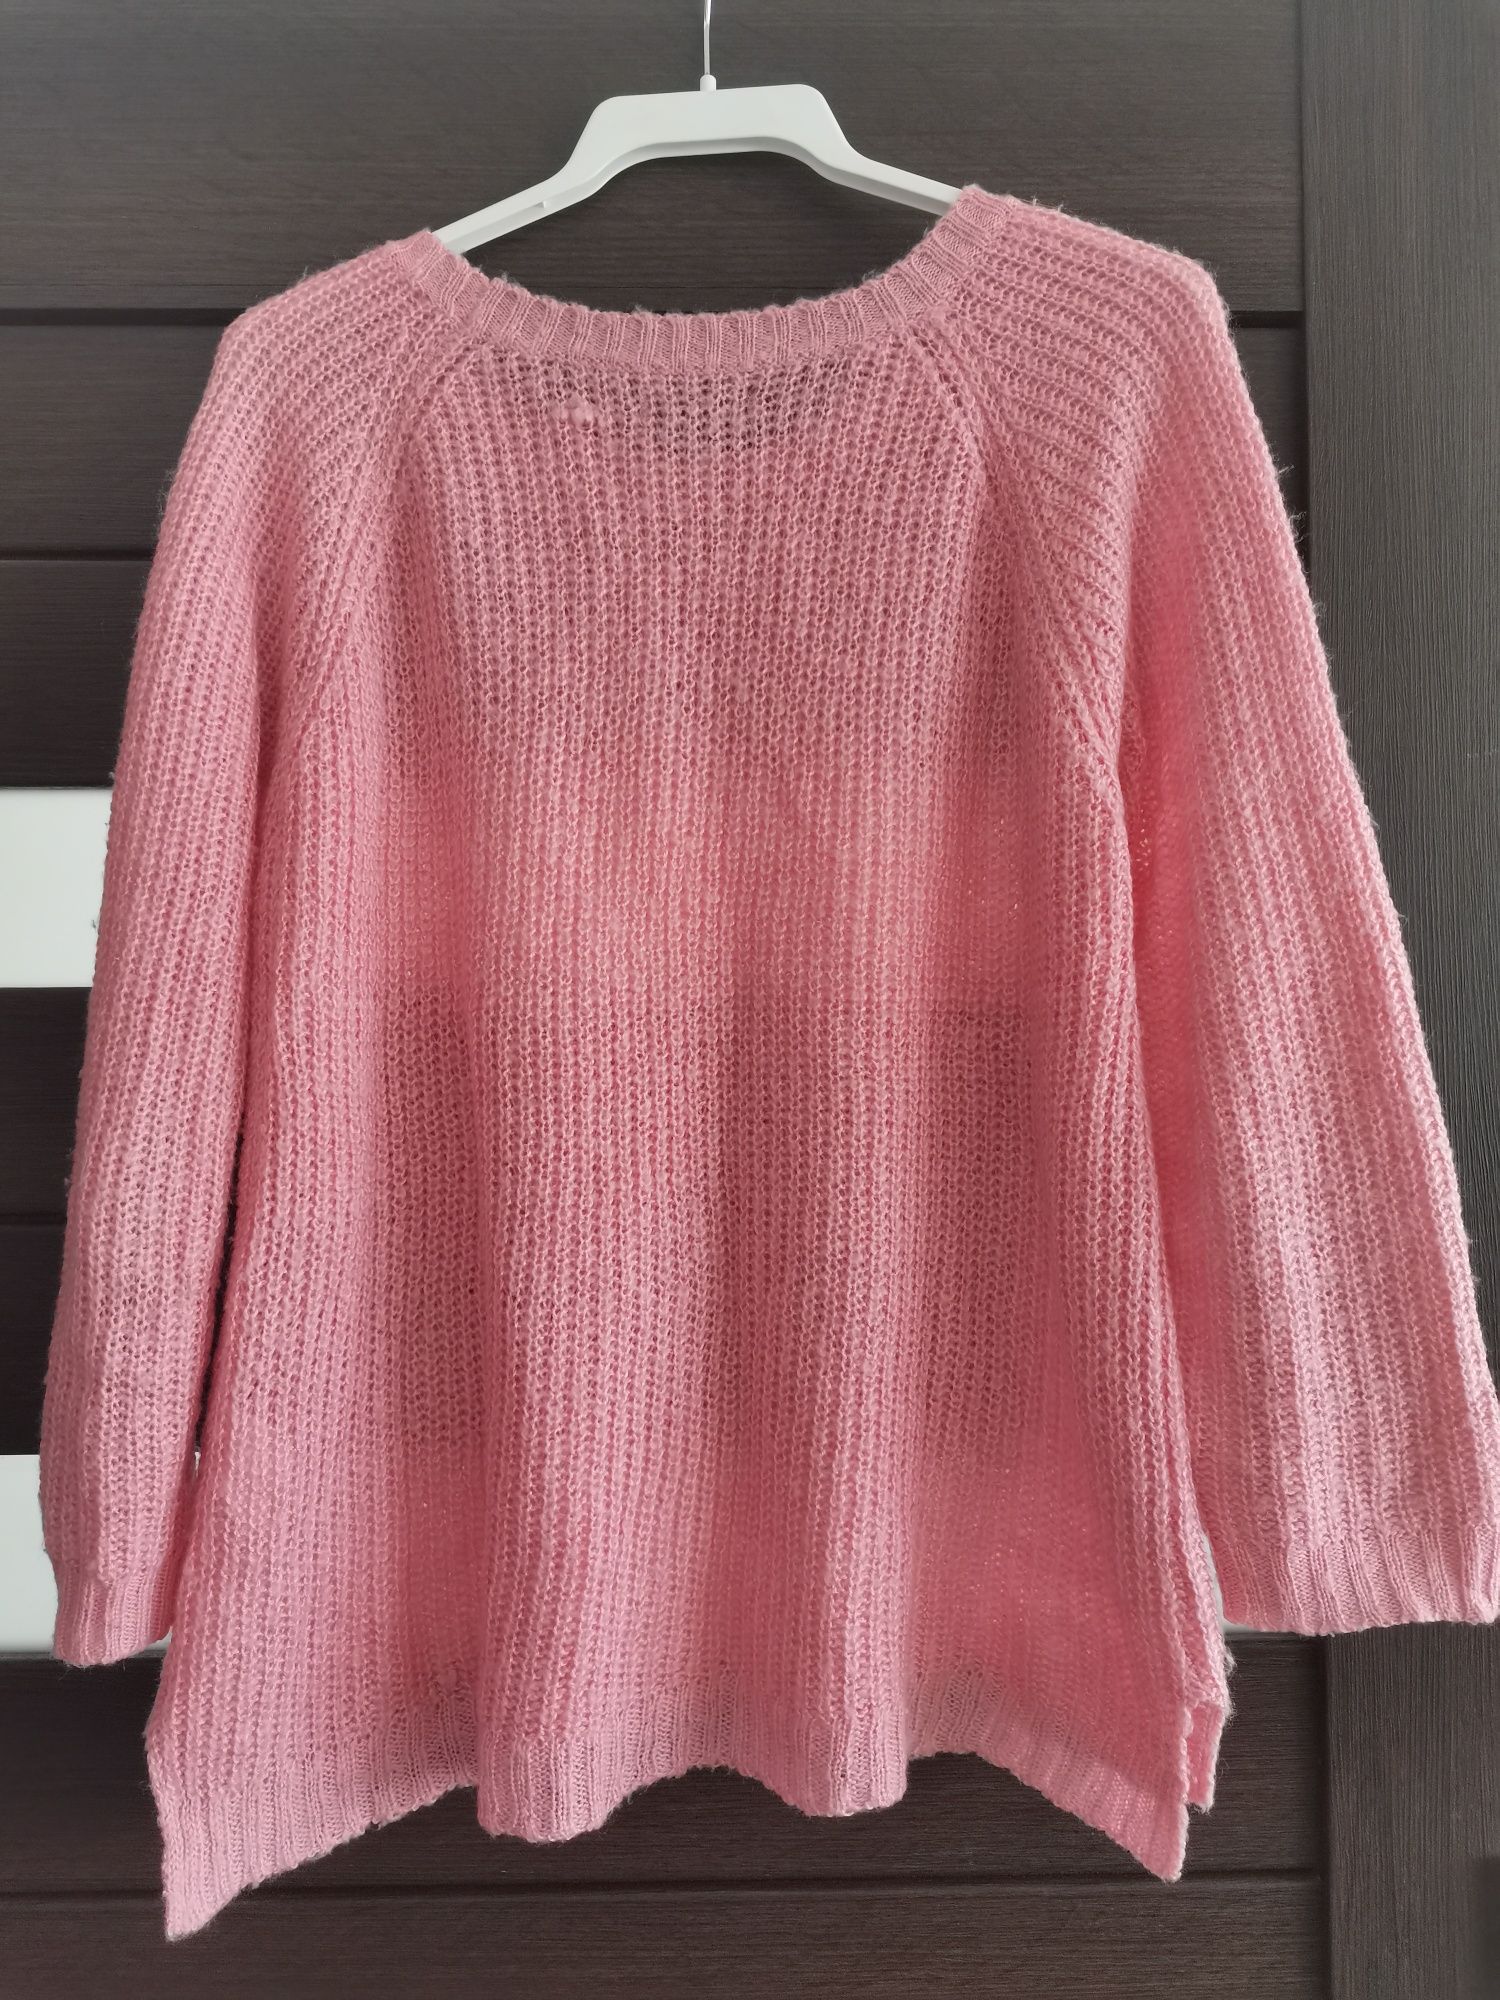 Sweterek różowy pudrowy 36/38 s/m lekki